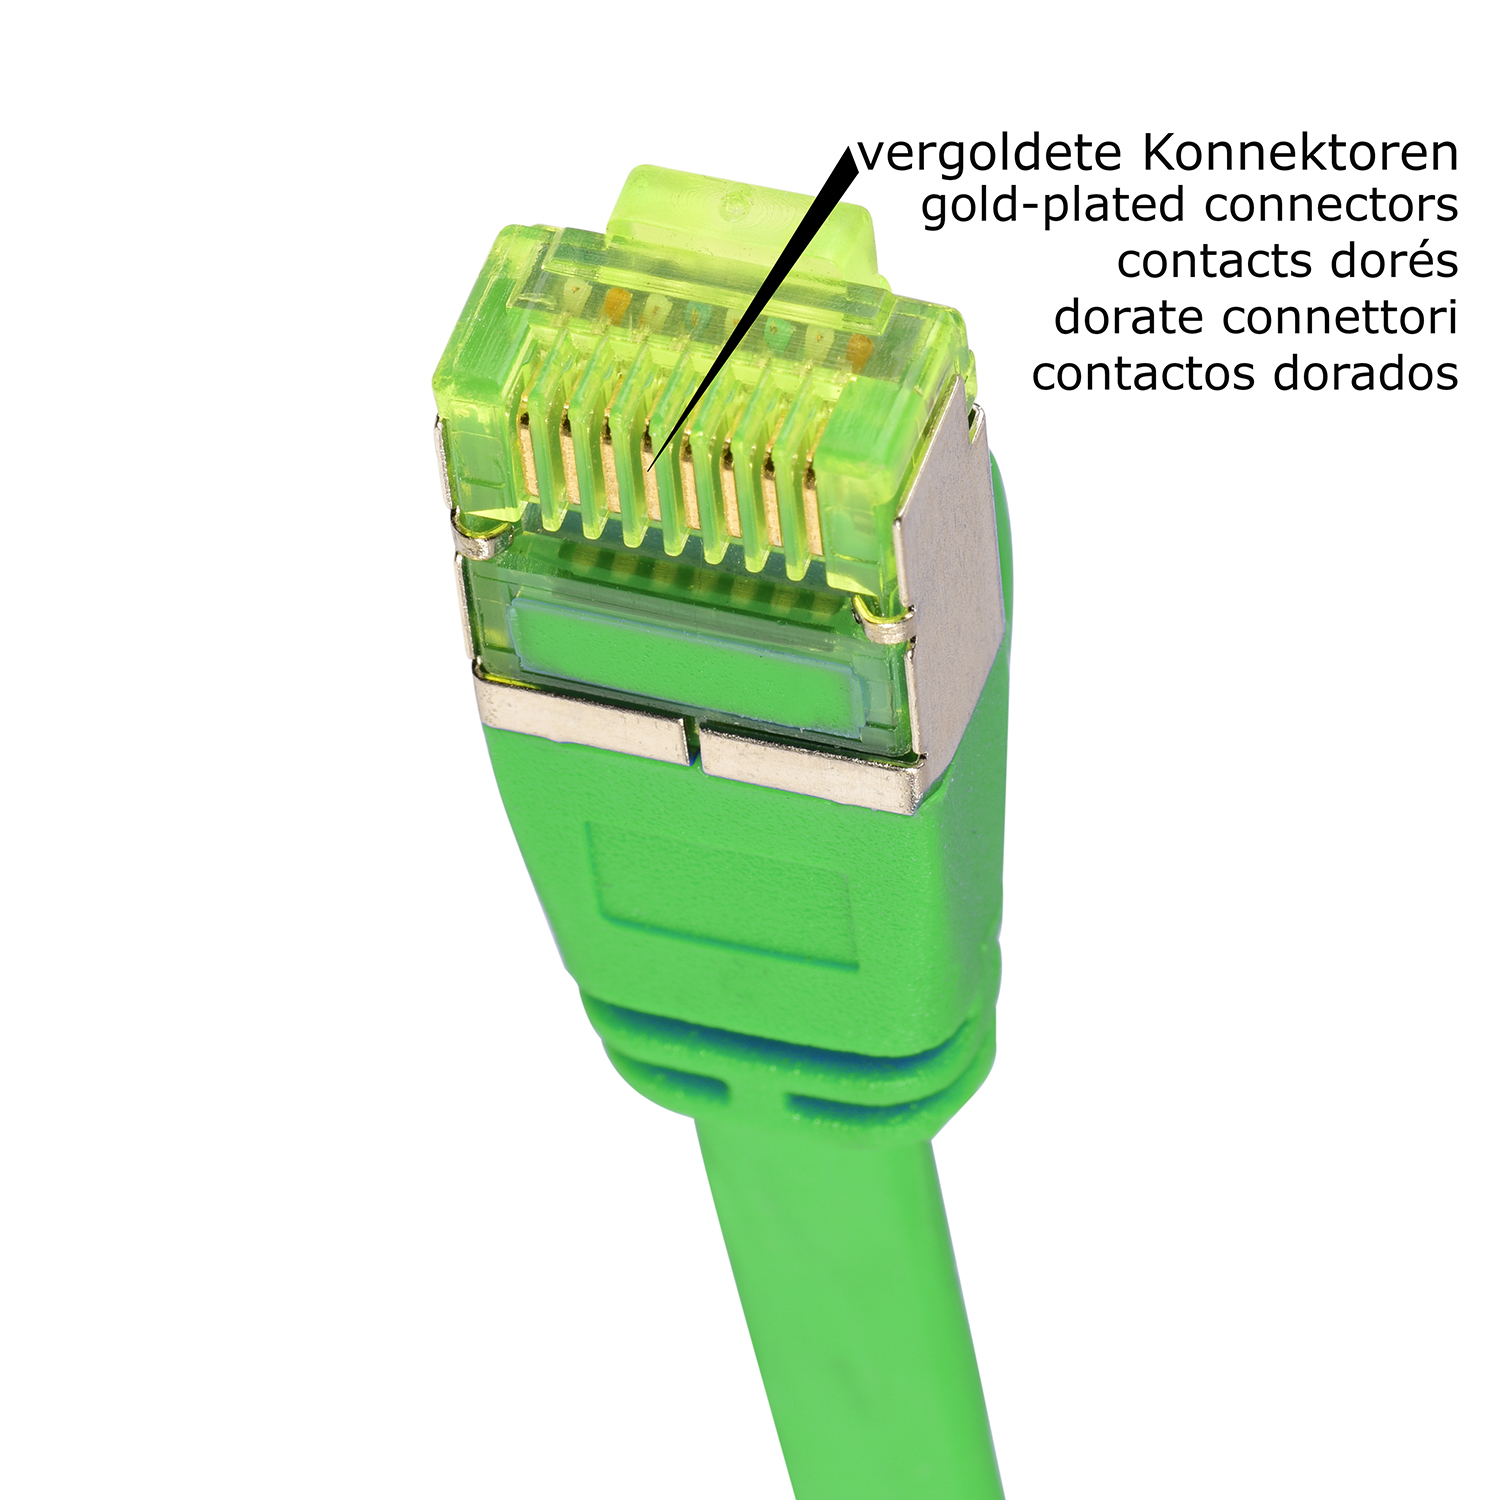 Netzwerkkabel, m grün, Flachkabel U/FTP Patchkabel / GBit, 10 10 10m TPFNET